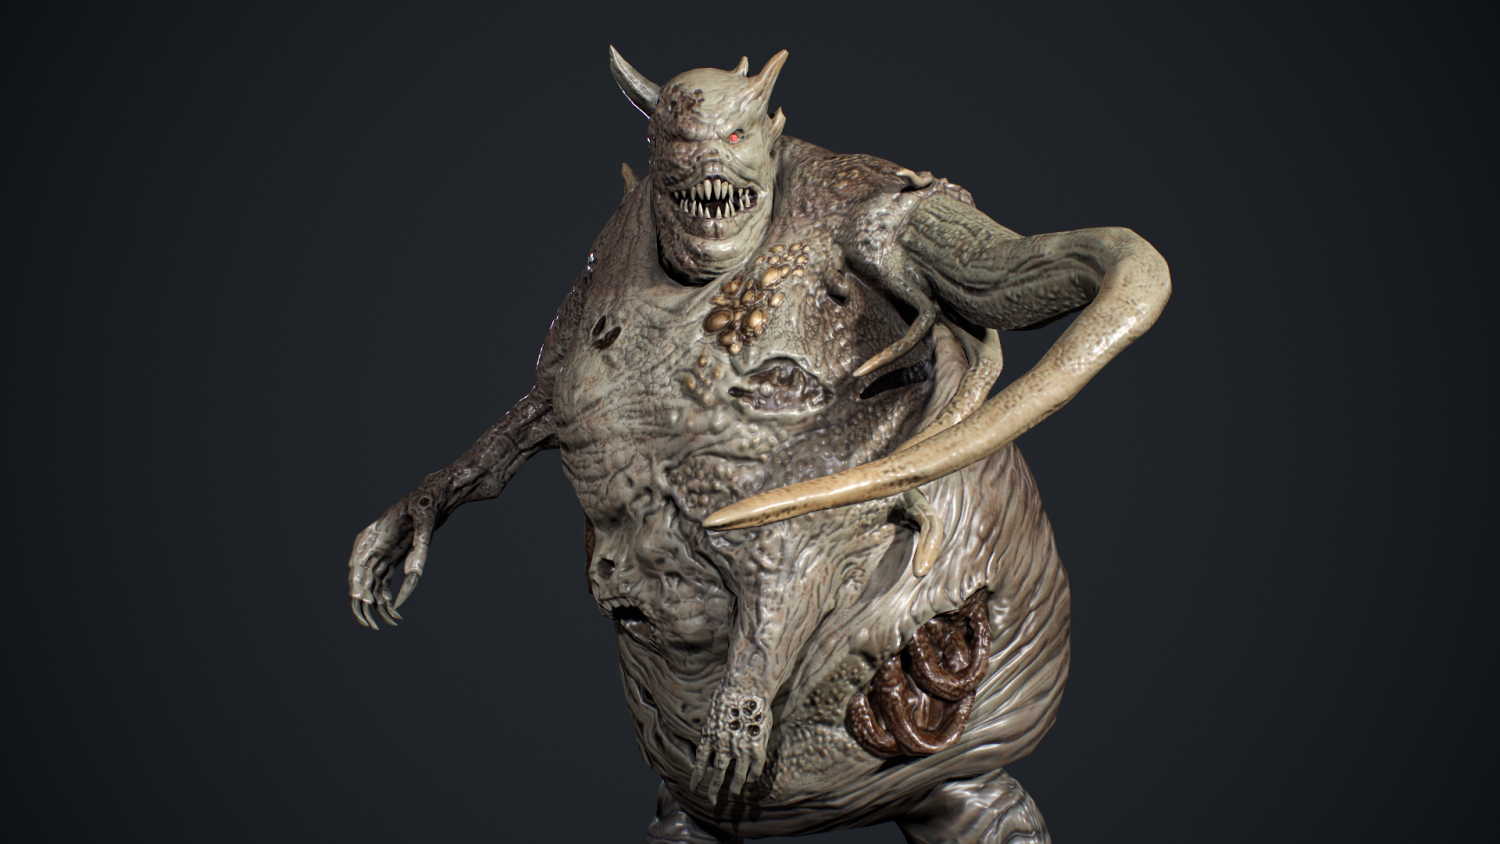 Evil Undead 4 3D Model in Monster 3DExport